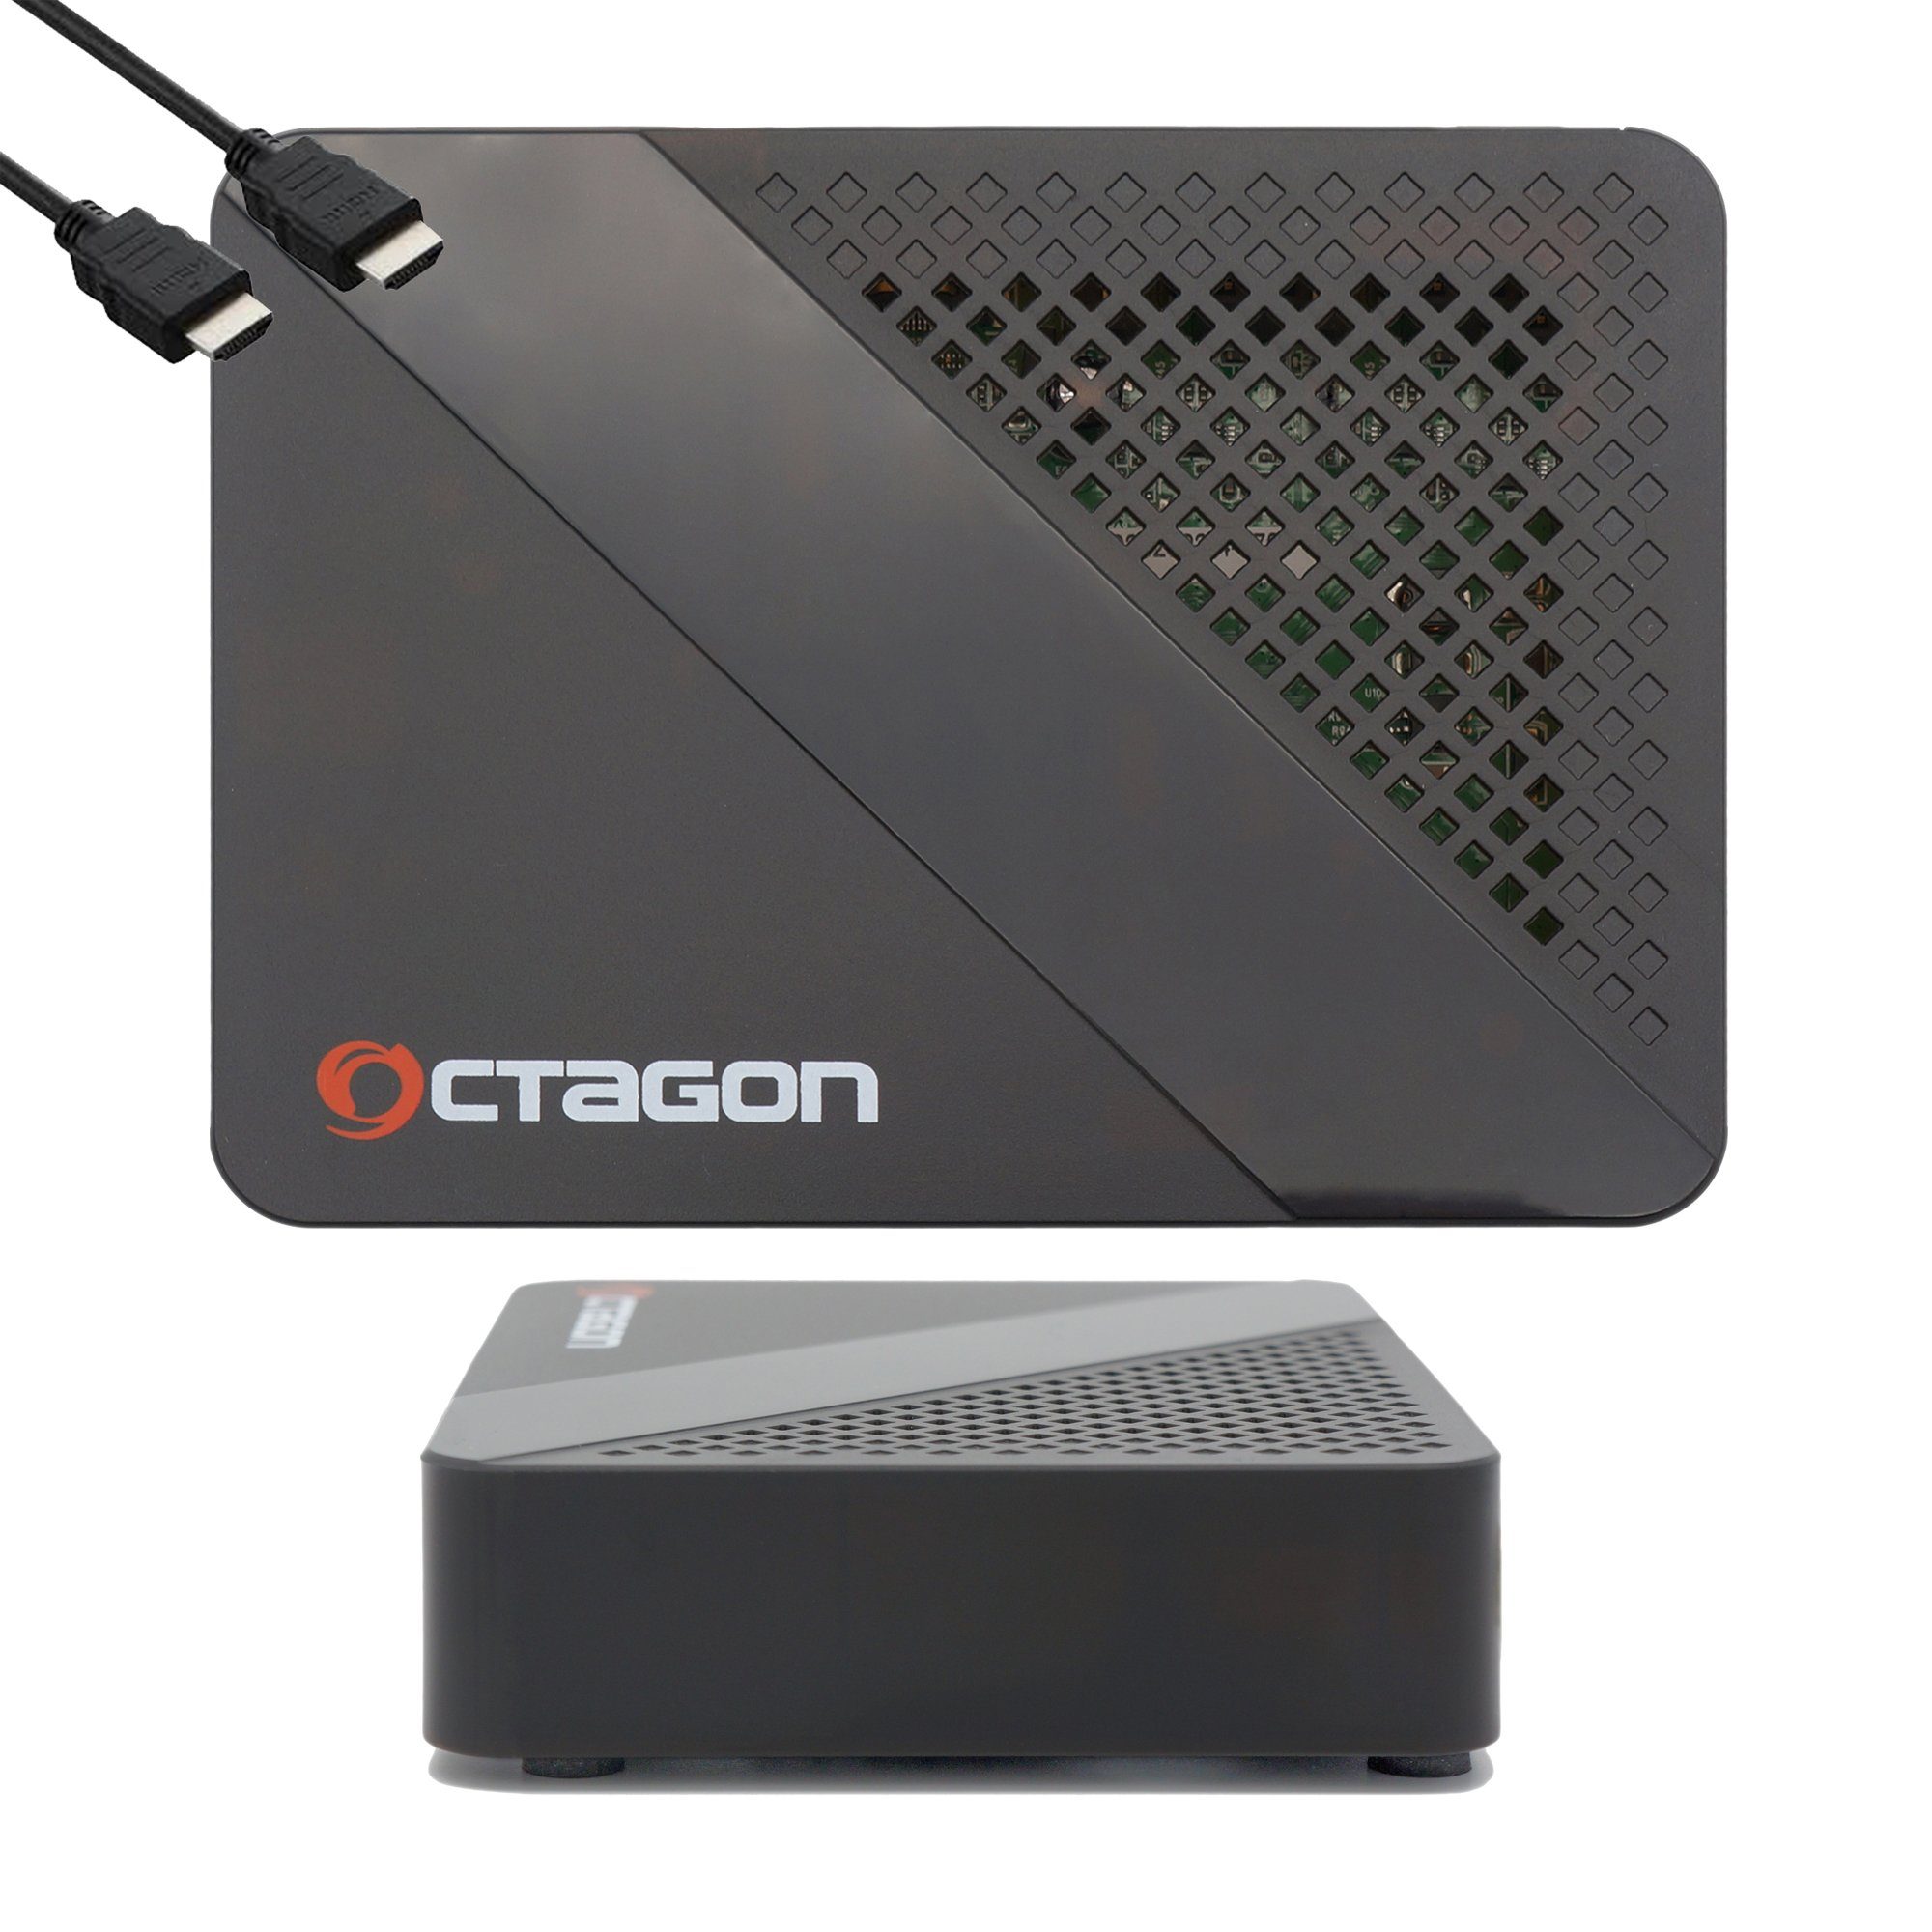 OCTAGON Streaming-Box SX887 HD WL Smart Box 150 Mbits IP H.265 HEVC IPTV WiFi mit